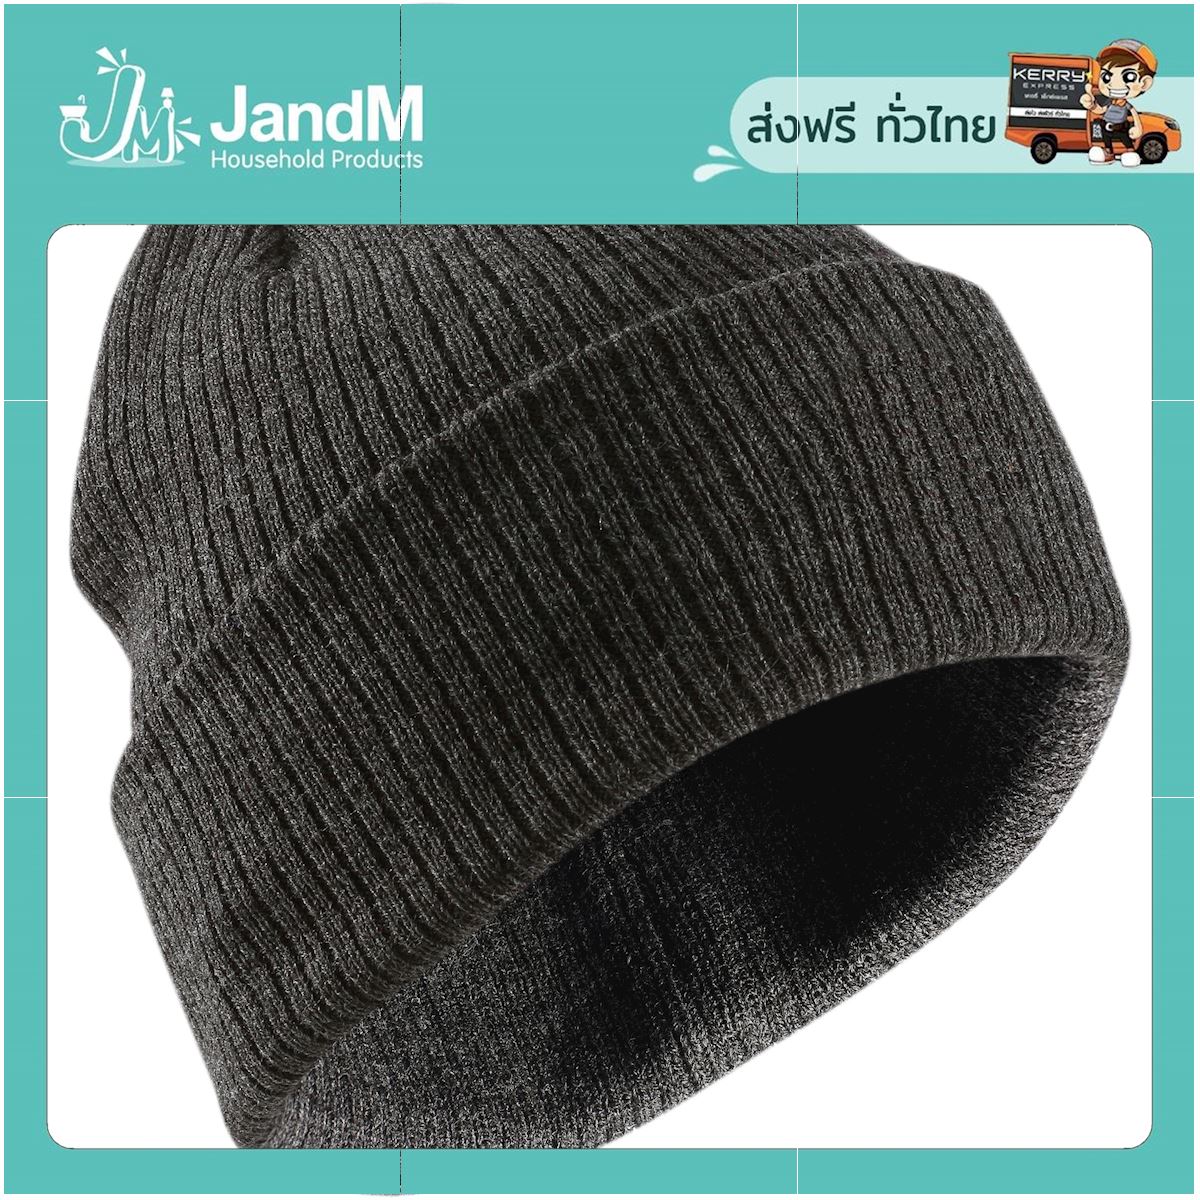 JandM หมวกสกีสำหรับผู้ใหญ่รุ่น Fisherman (สีเทา) ส่งkerry มีเก็บเงินปลายทาง